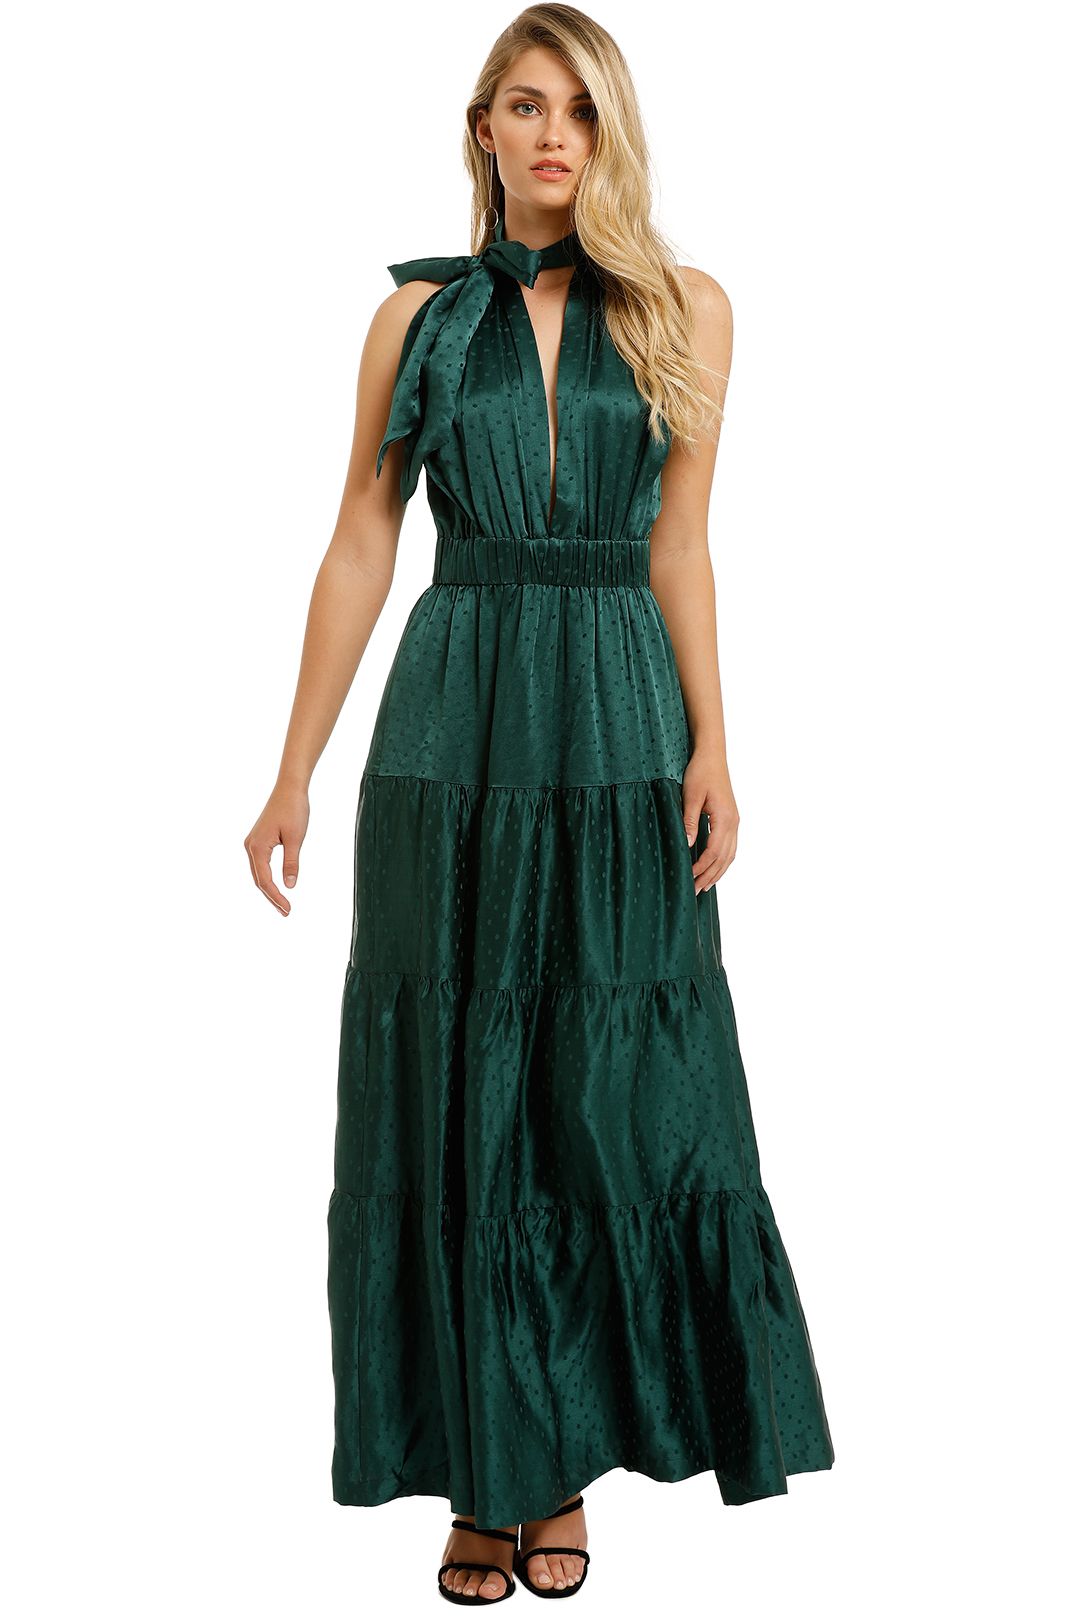 KITX-Essence-Spot-Dress-Emerald-Front